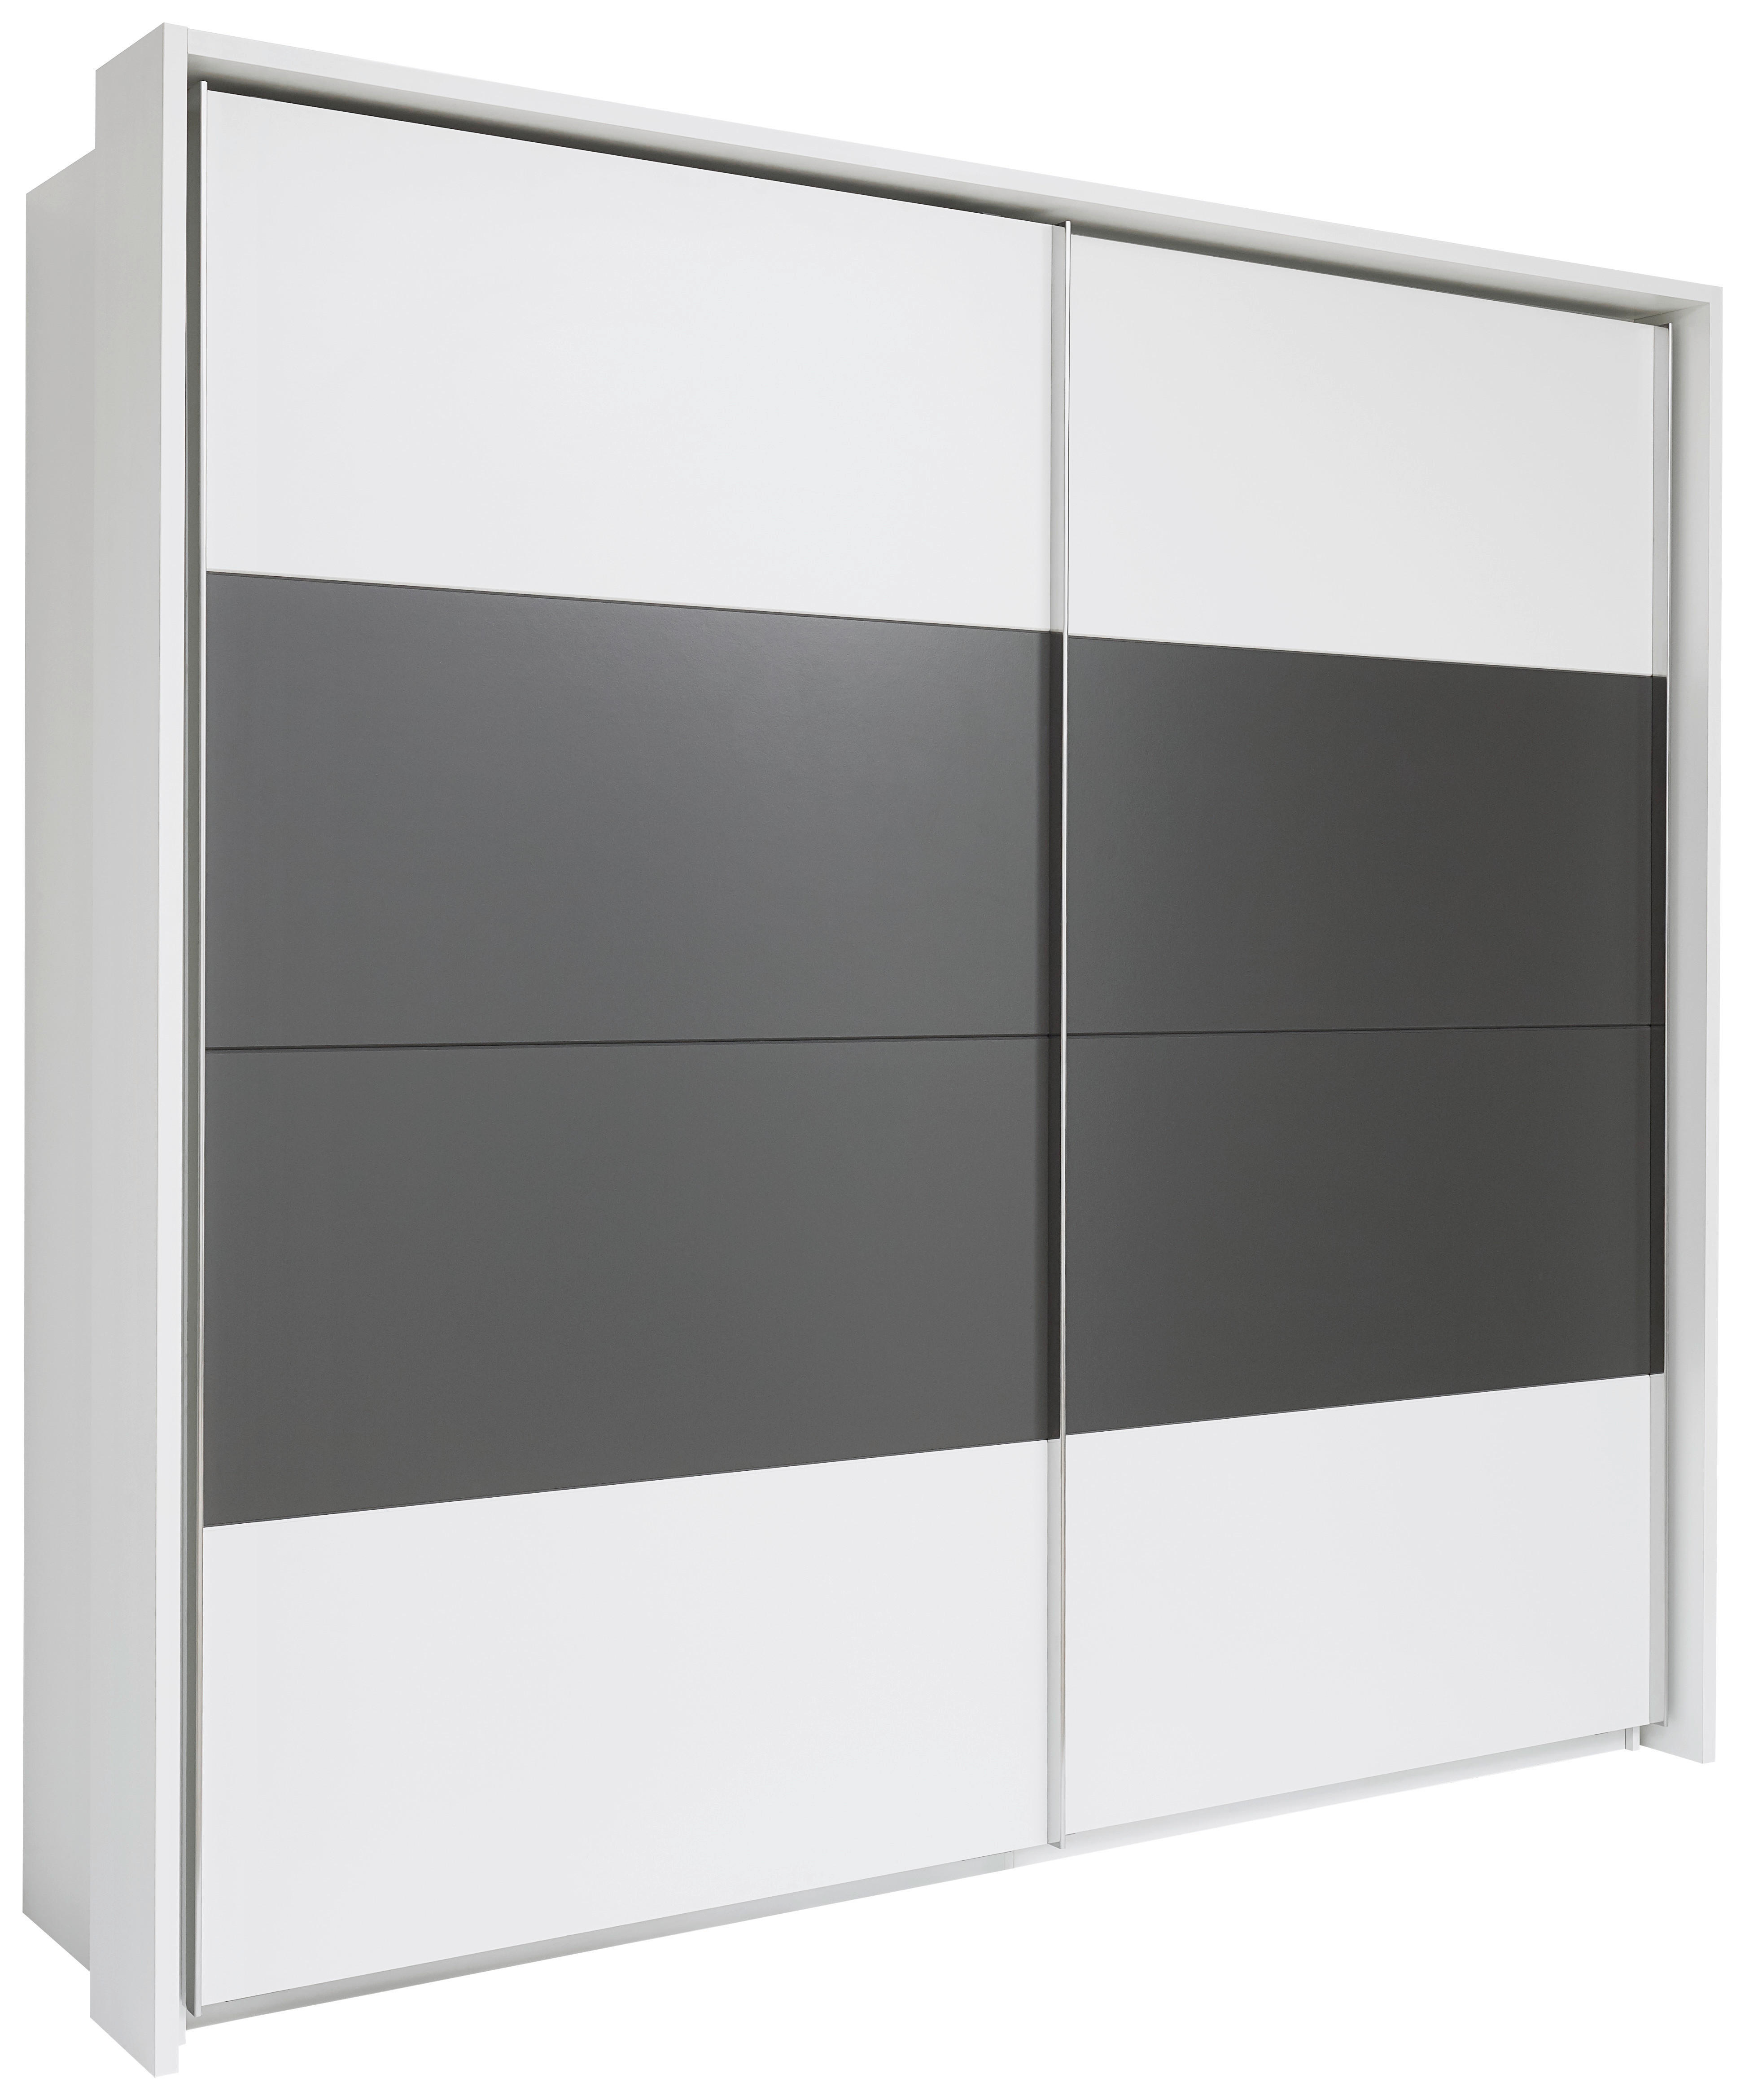 Xora SKŘÍŇ S POSUVNÝMI DVEŘMI, bílá, tmavě šedá, 240/226/64 cm - bílá,tmavě šedá - kompozitní dřevo